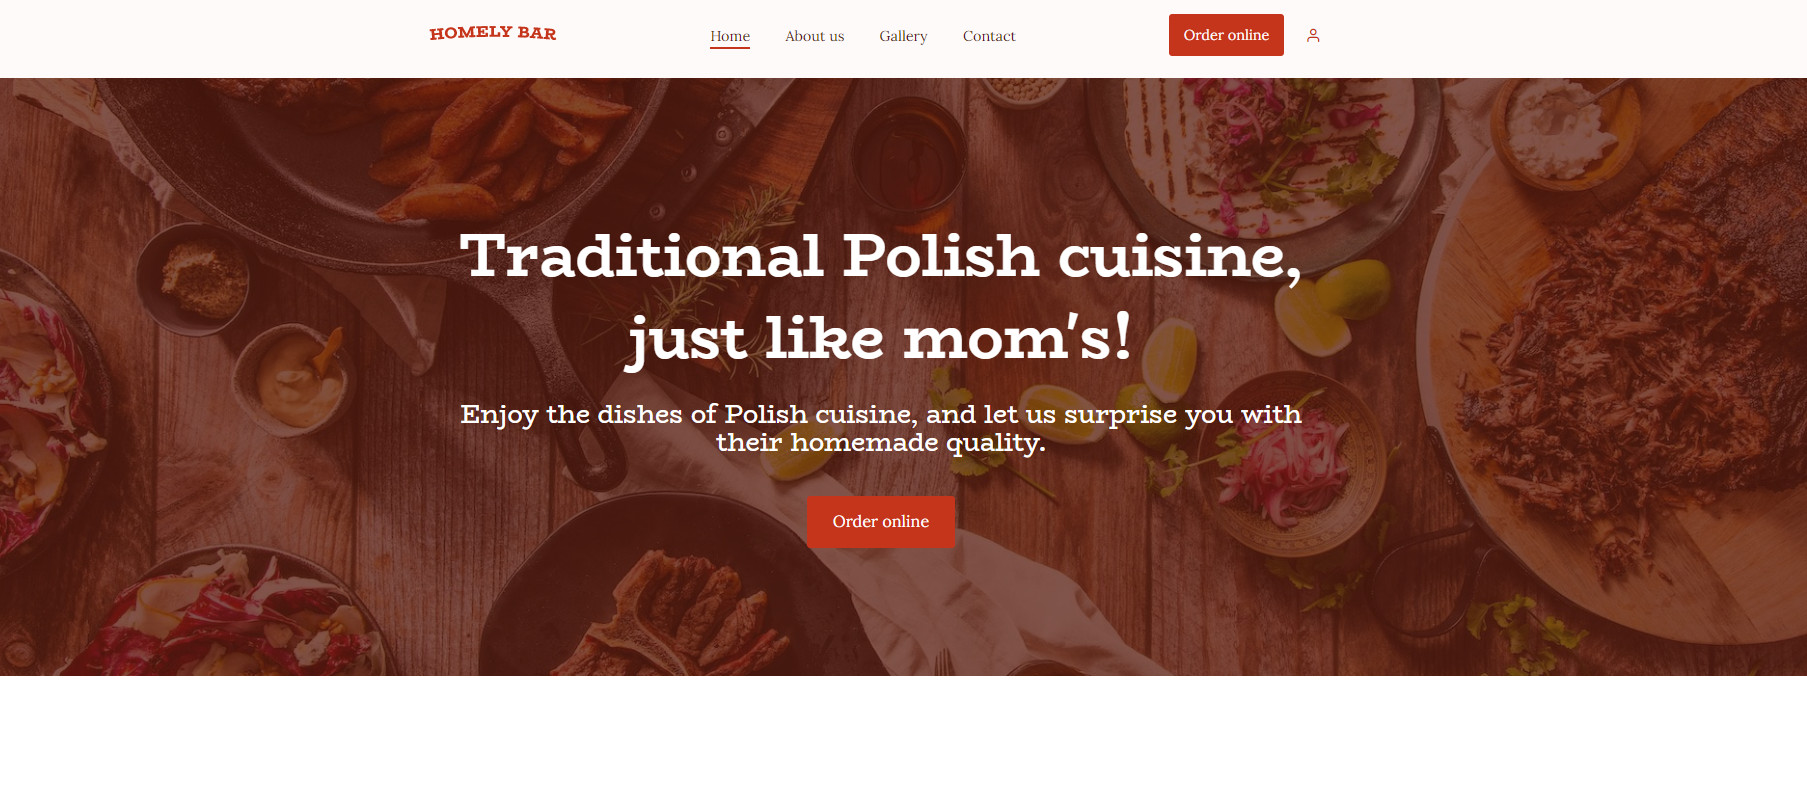 The best restaurant website design for European cuisine